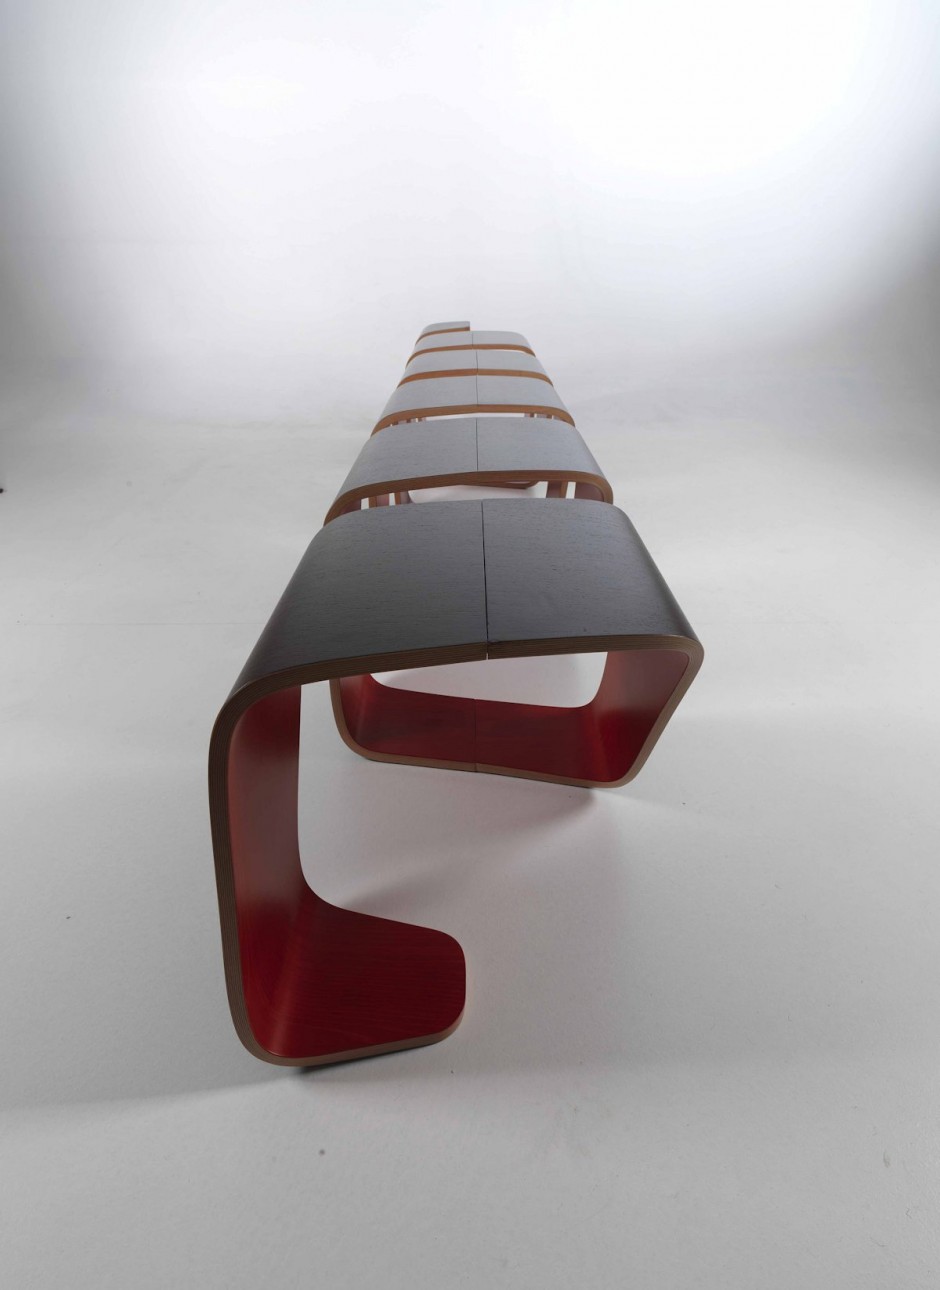 DNA螺旋概念长椅设计